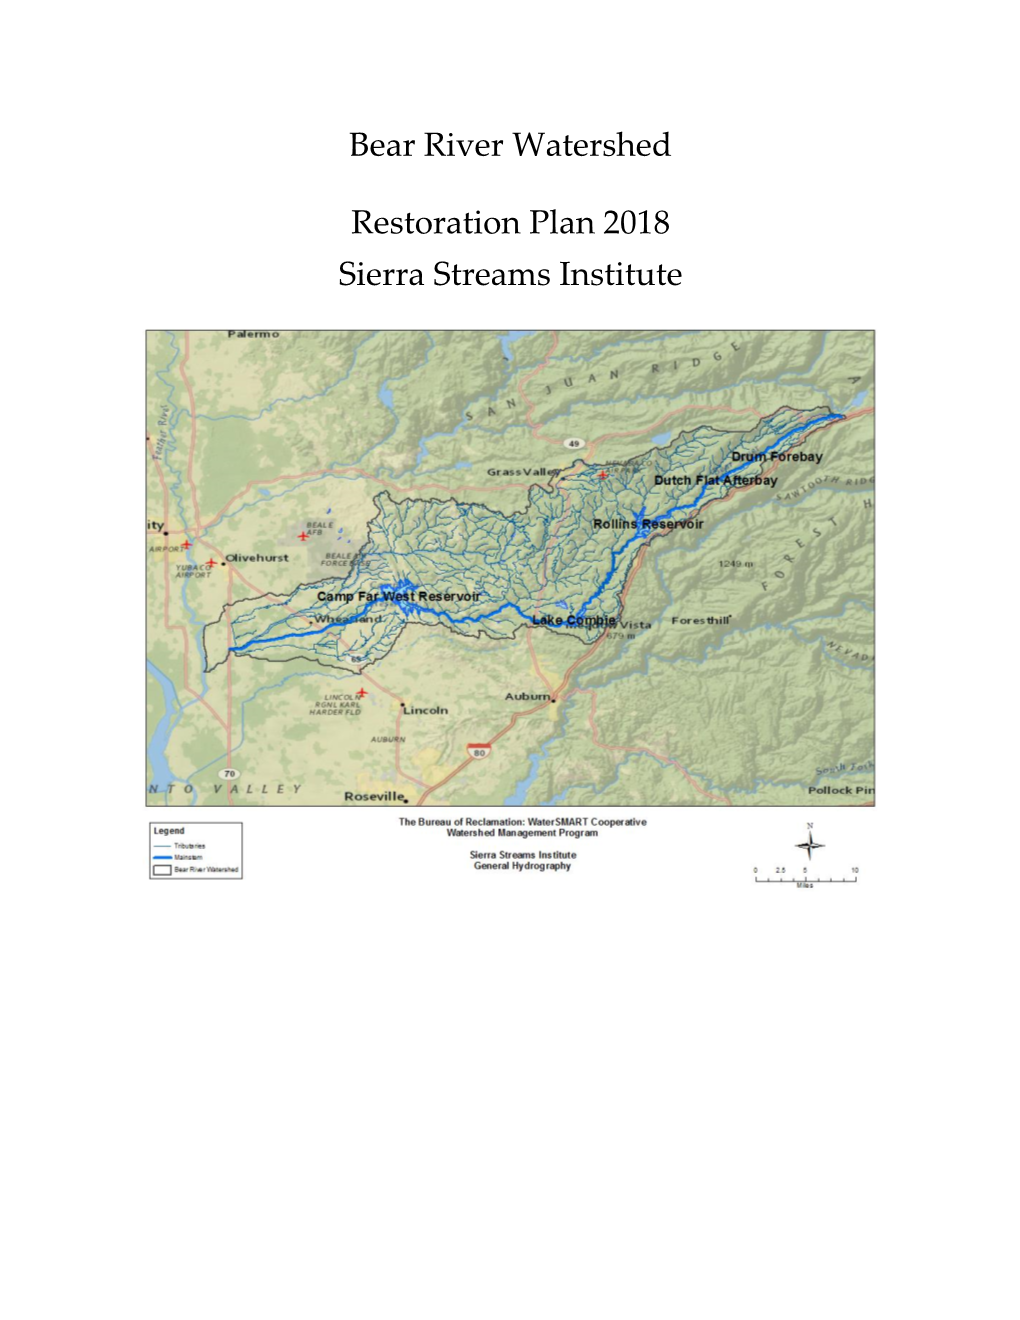 Bear River Watershed Restoration Plan 2018 Sierra Streams Institute